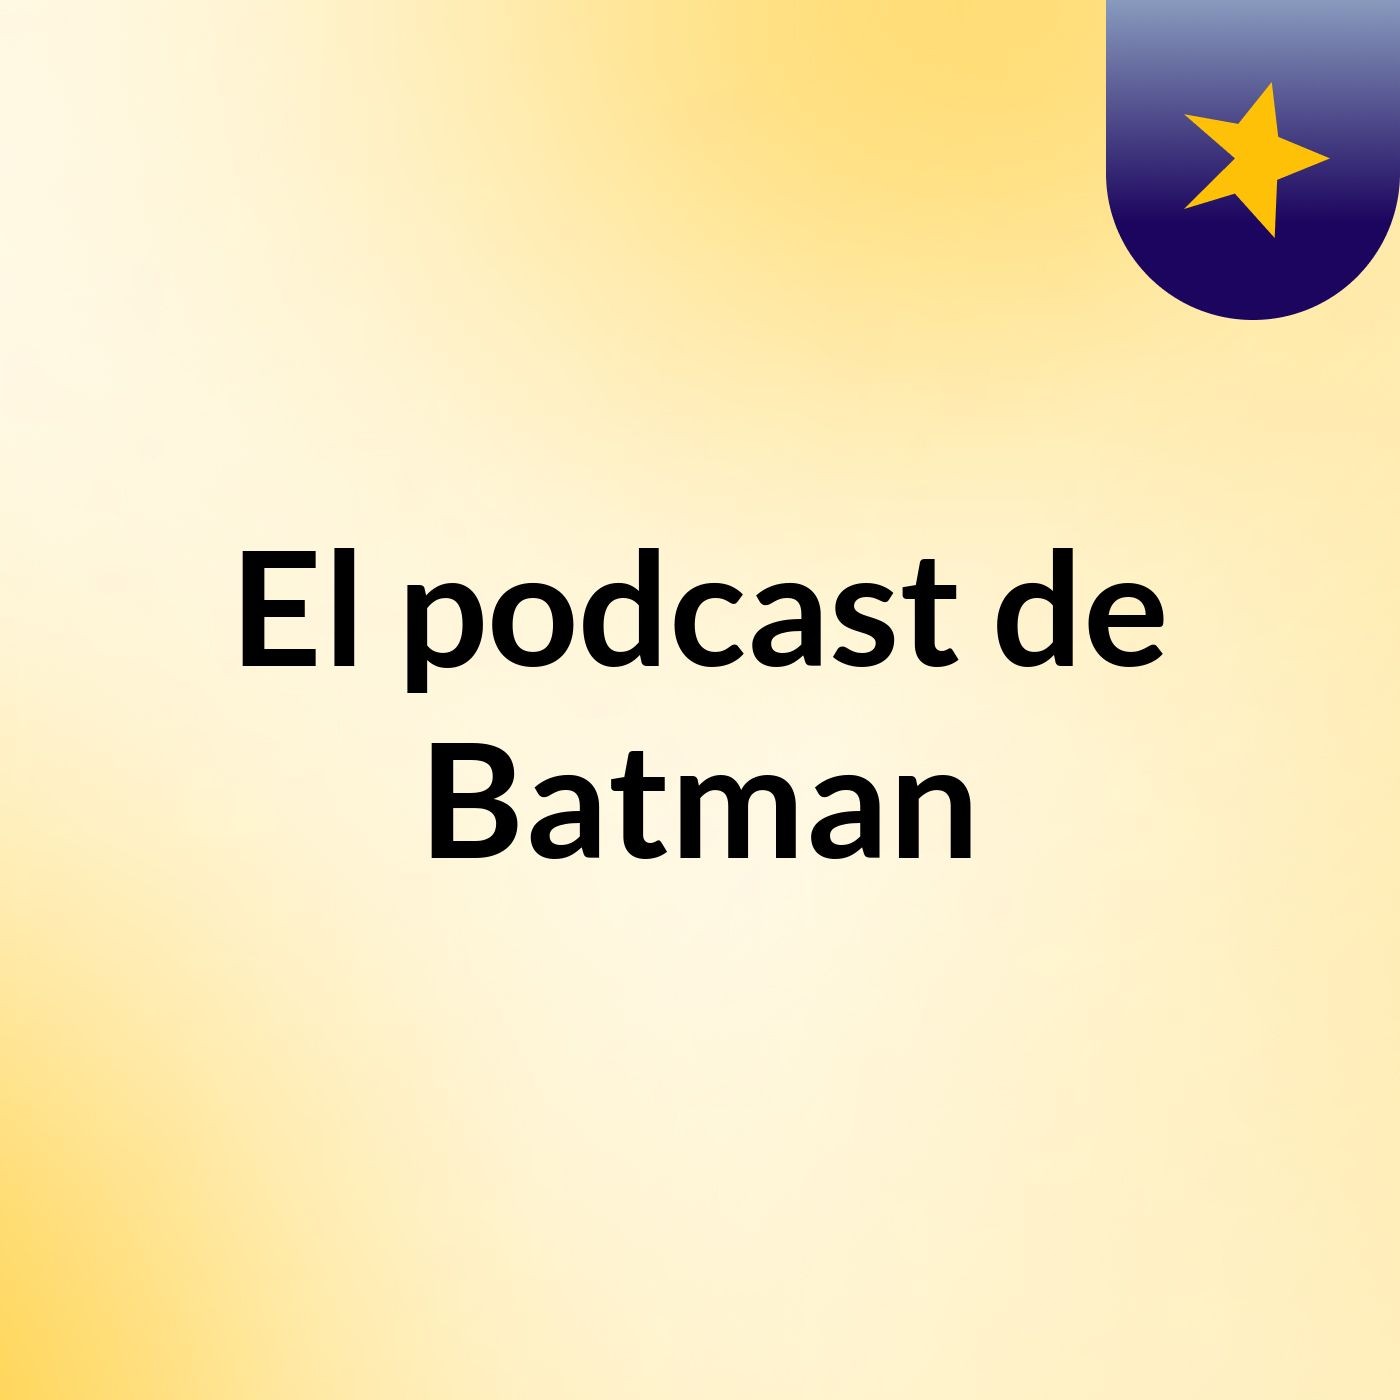 Episodio 3 - El podcast de Batman